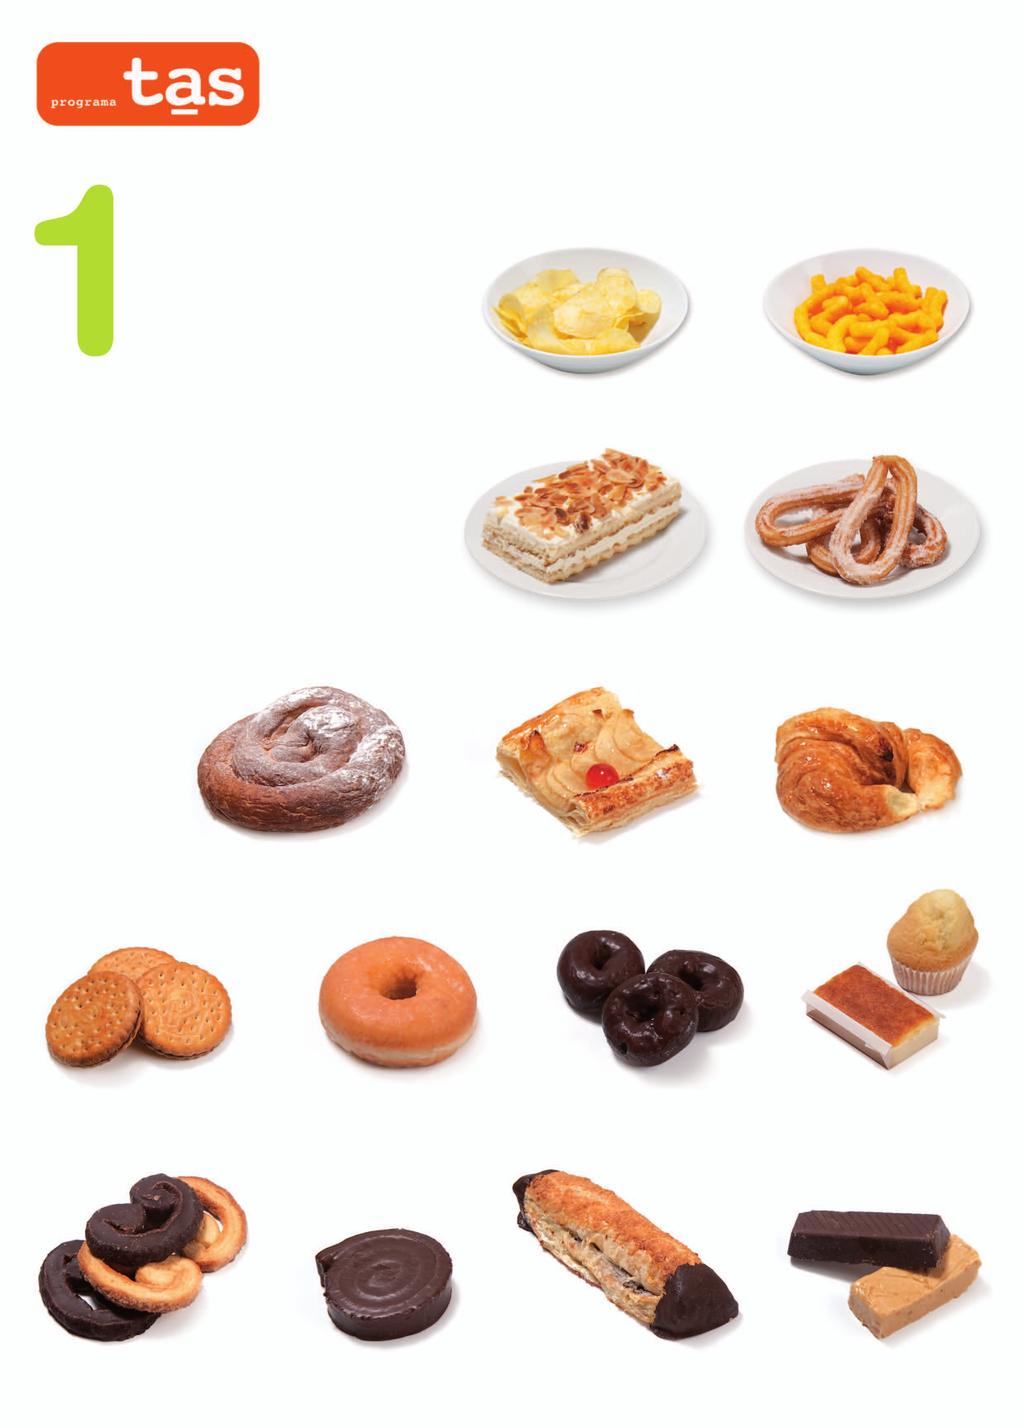 PASTELERÍA, BOLLERÍA y SNACKS Considera una unidad de pastelería, bollería o snacks a: una ensaimada, una magdalena grande o dos pequeñas, una palmera, un trozo de pastel, tres galletas con